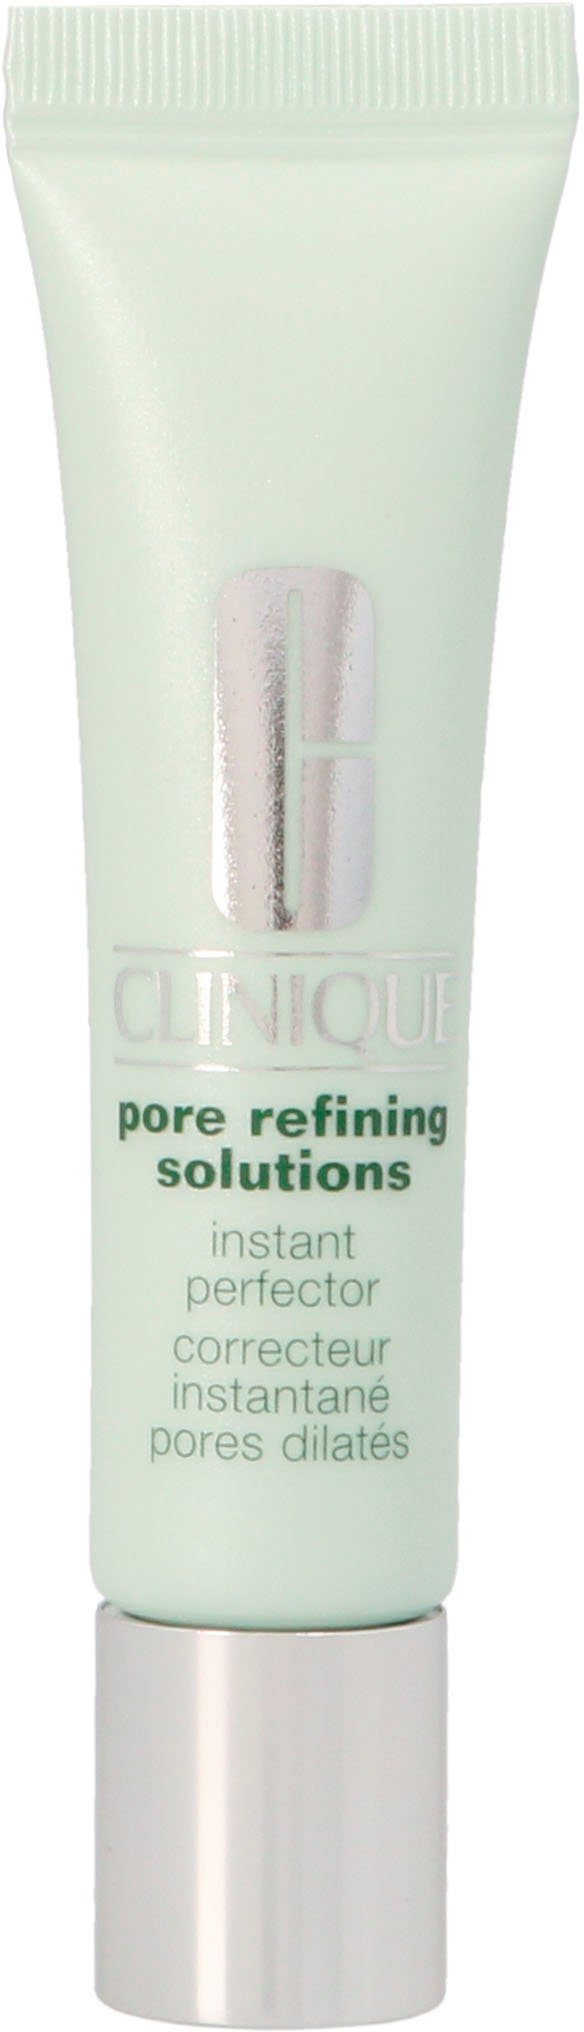 CLINIQUE Getönte Gesichtscreme Pore Refining Solutions Instant Perfector,  Lässt den Teint ebenmäßiger erscheinen | Reinigungscremes